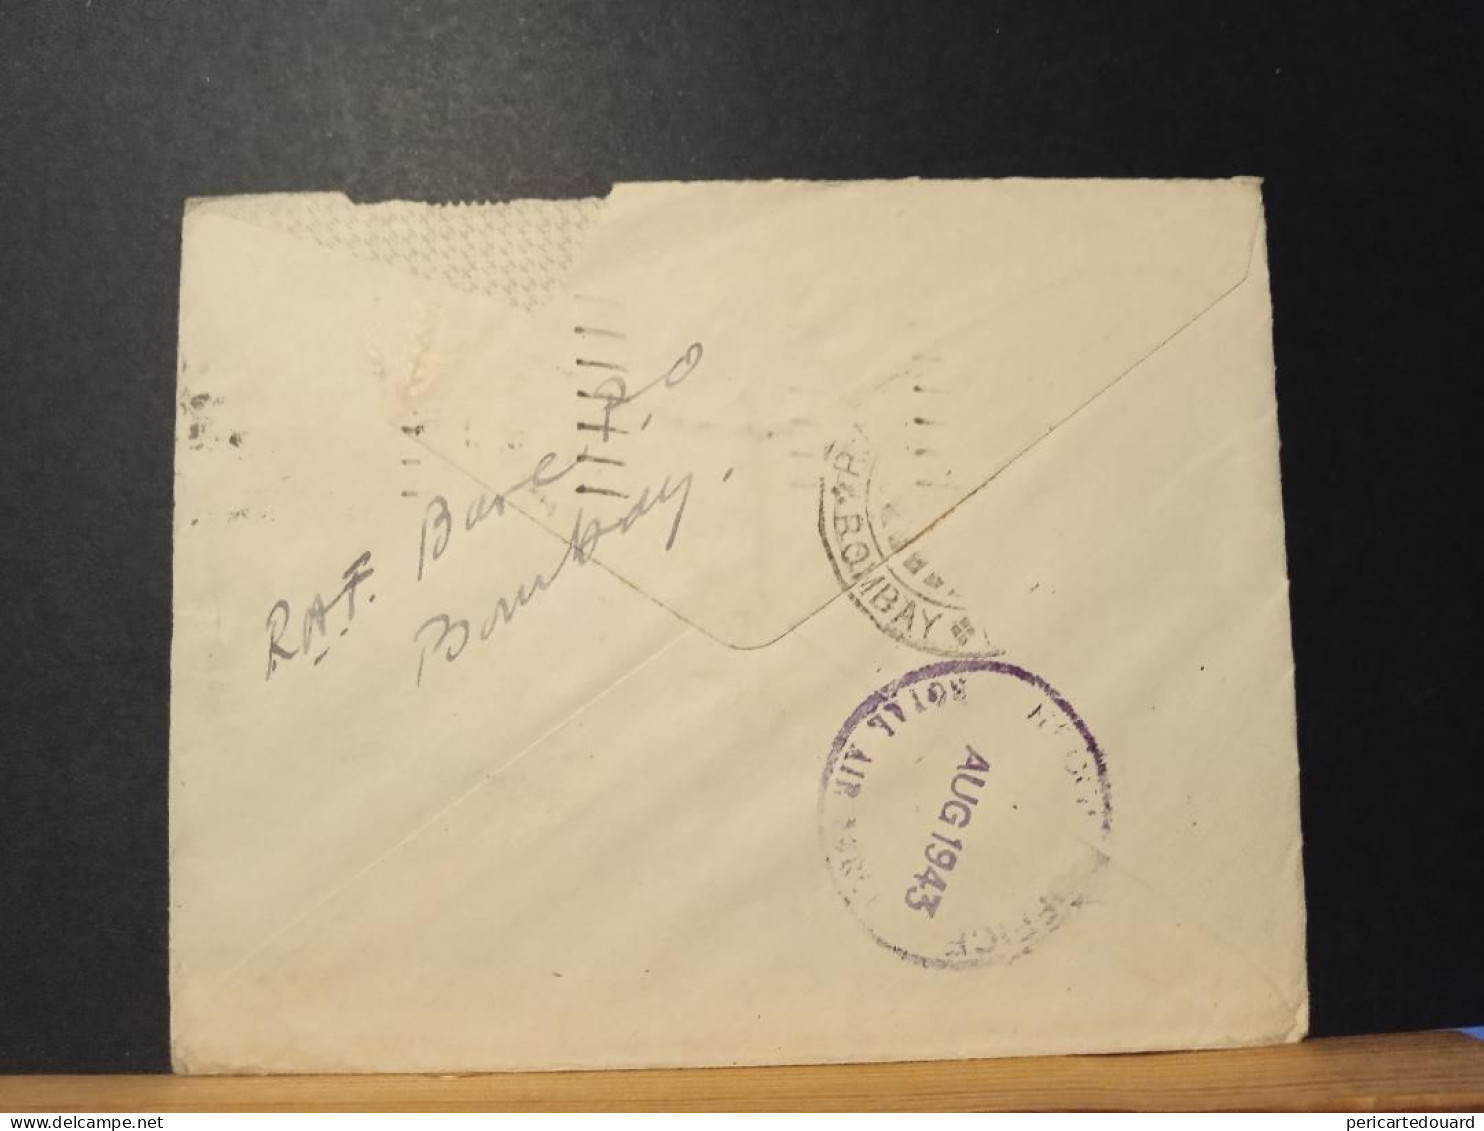 GB, Cachet N° 28 Le 17 Janvier 1943, RAF Base Post Office Bombay Aout 1943 Au Verso, - Storia Postale